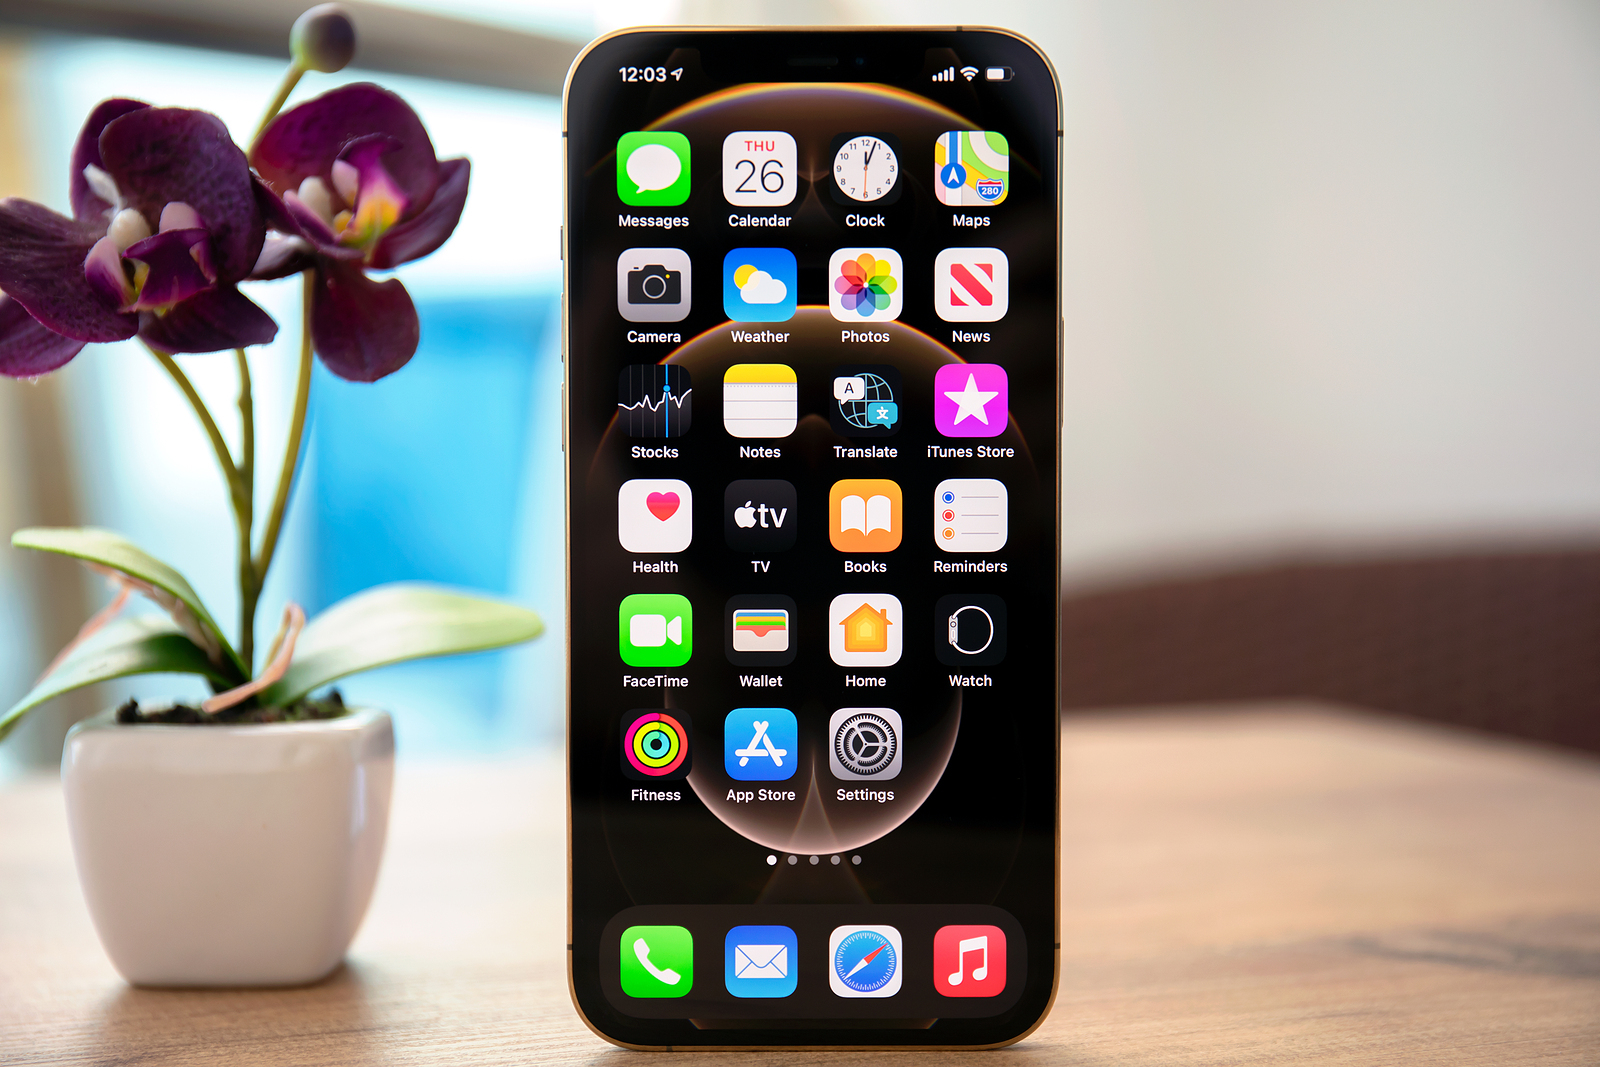 Voltado para iPhone, o app ReiBoot auxilia seus usuários na solução de diversas falhas do aparelho como tela preta, círculo girando e celular travado na tela de bloqueio